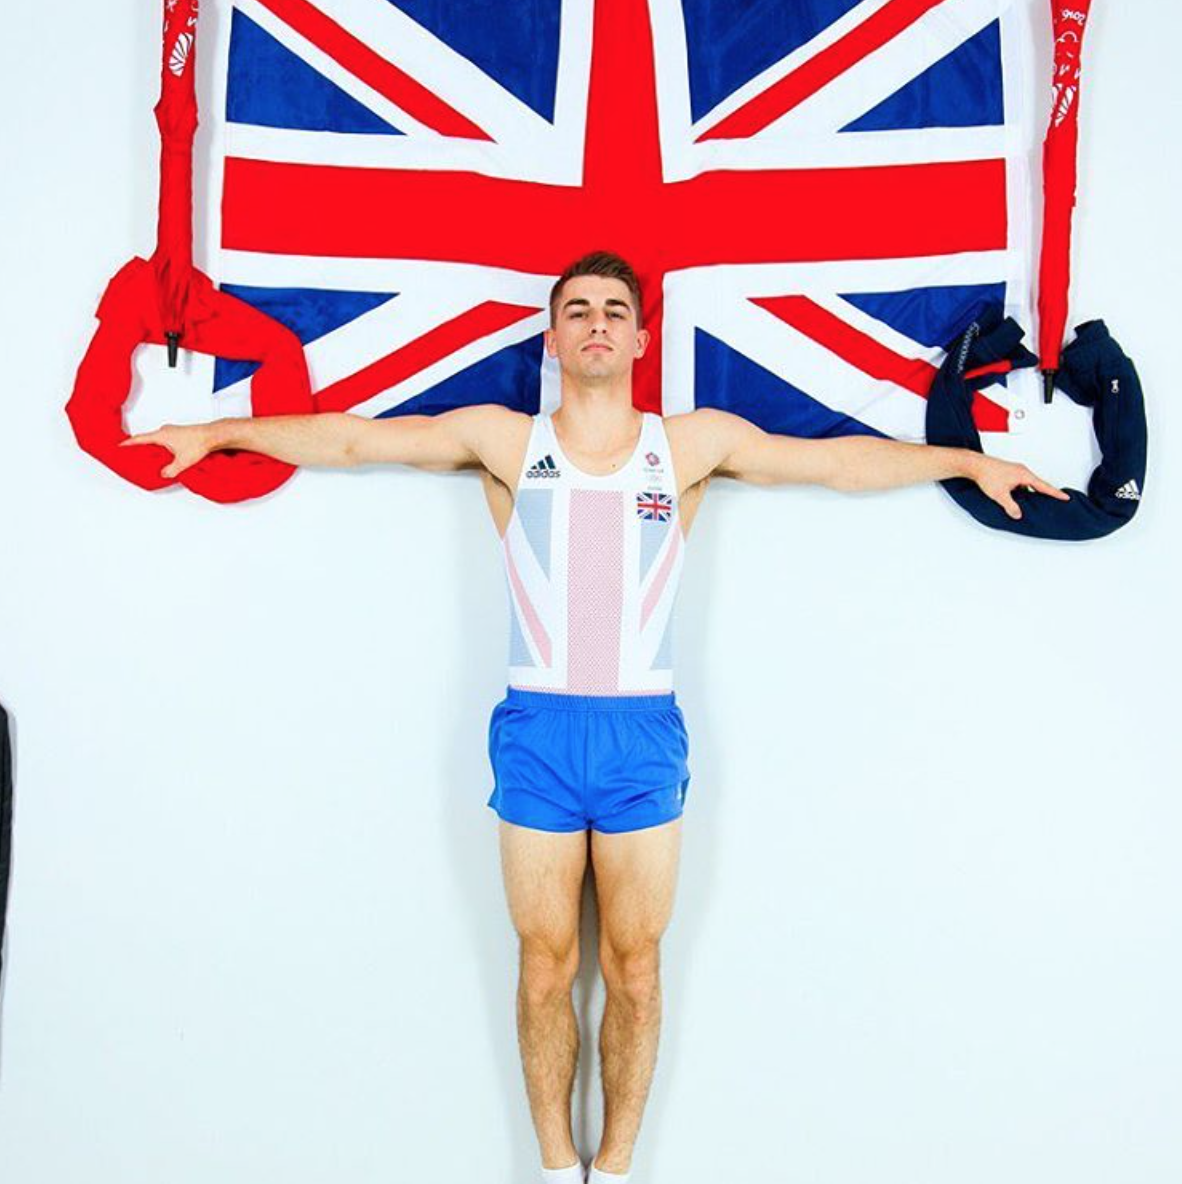 El gimnasta Max Whitlock marca un ‘paquete de oro olímpico’